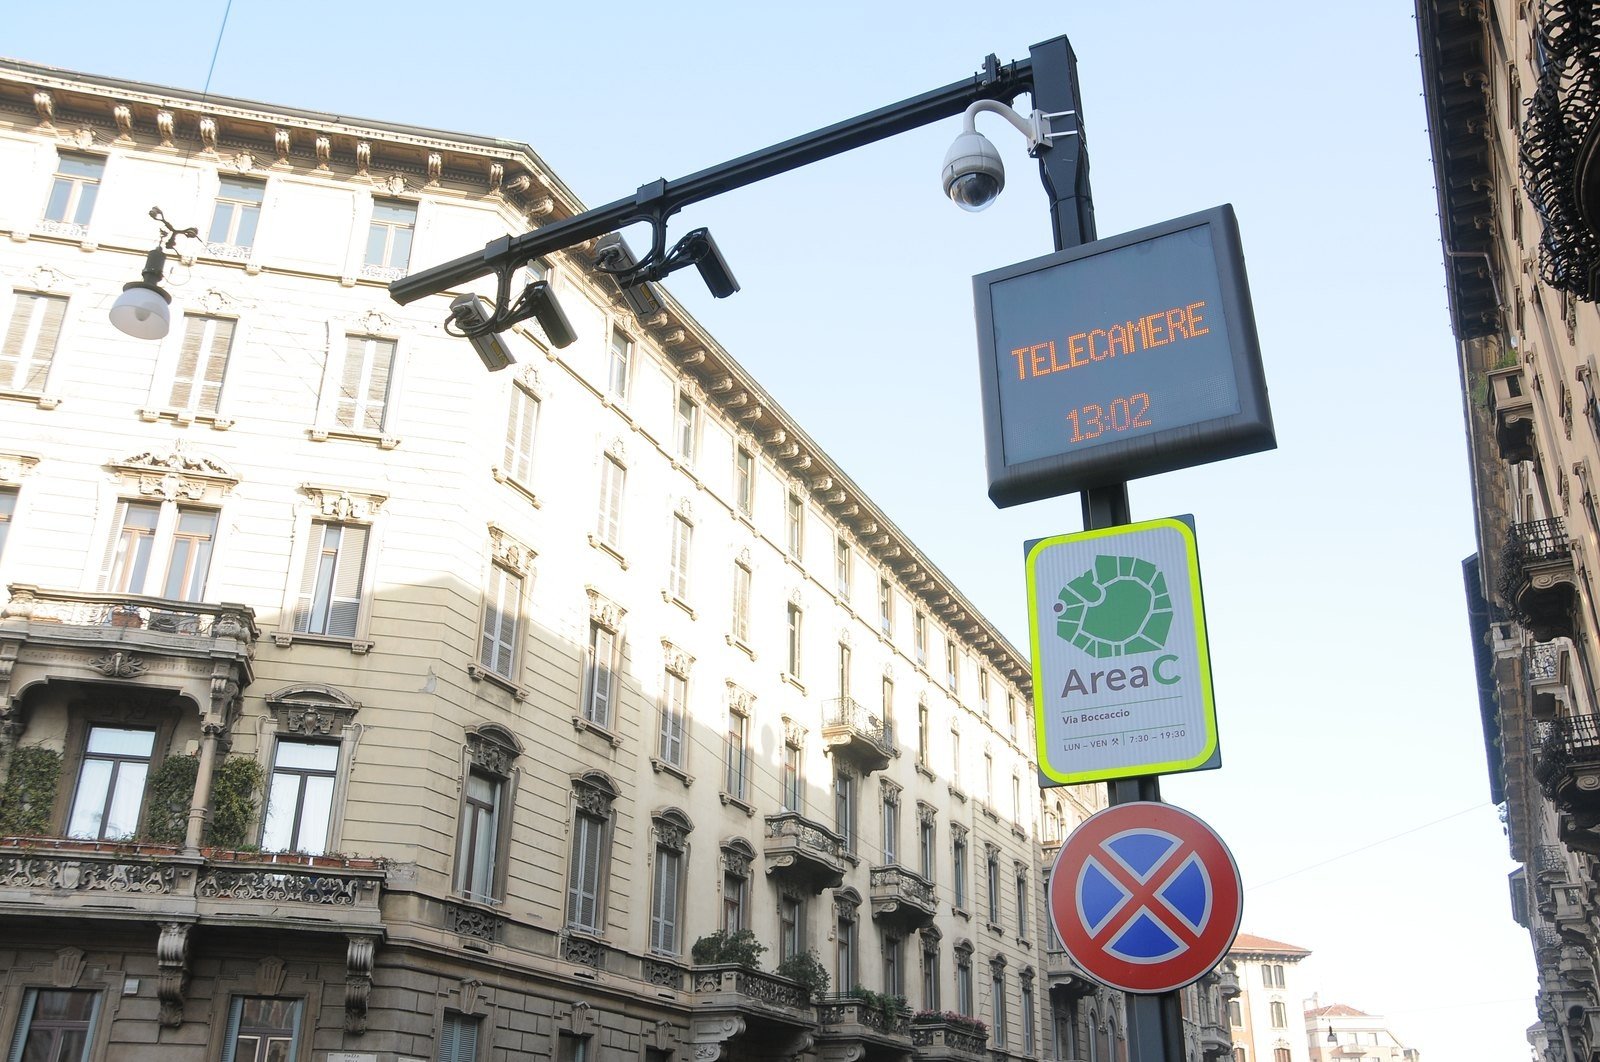 Milano, nuove regole alla mobilità: il ticket di Area C aumentato a 7,5 euro,  Area B vietata ai camion senza sensori